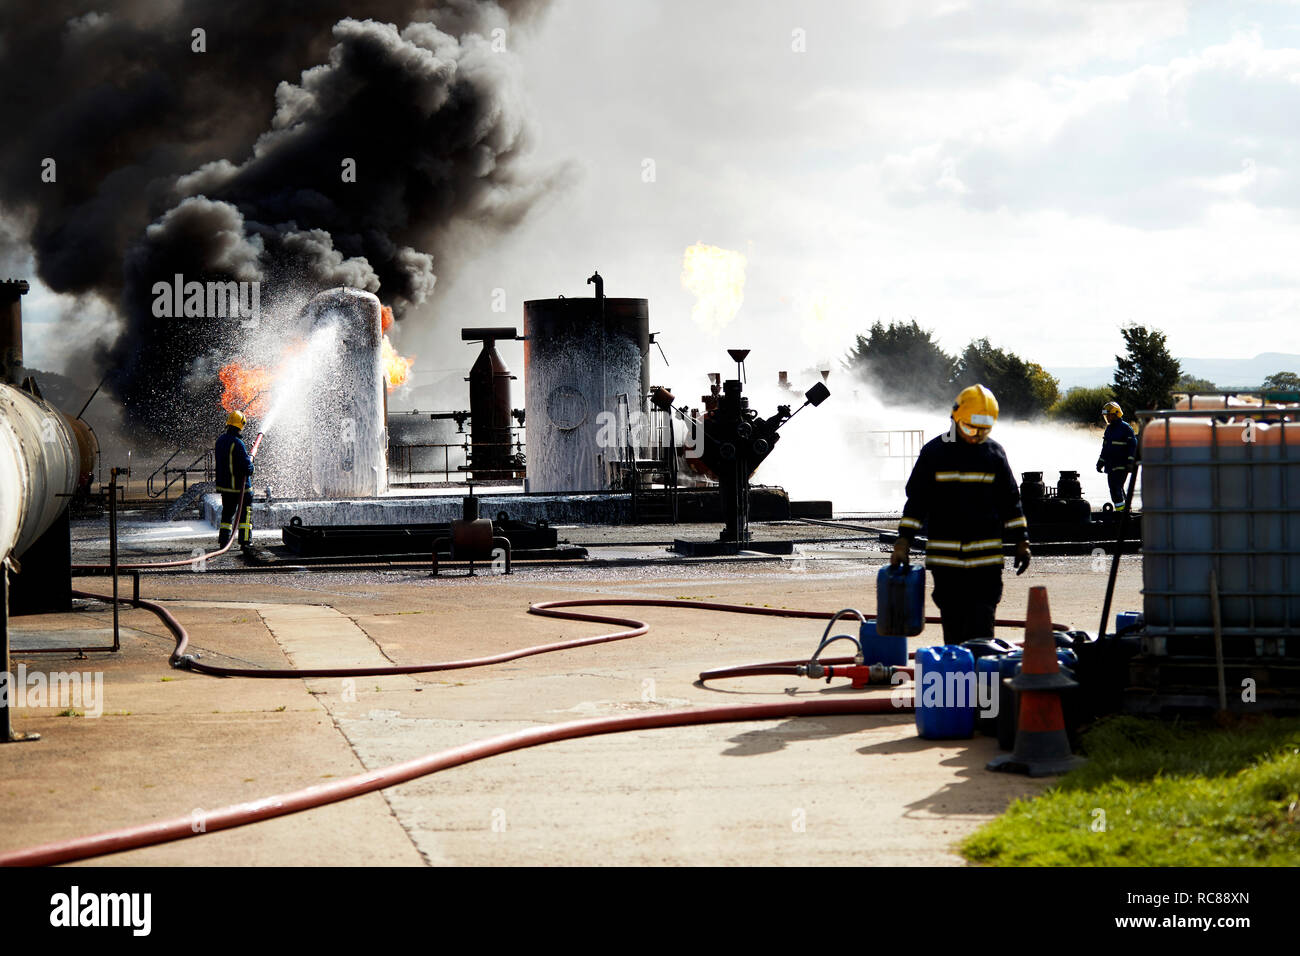 La formación de los Bomberos para extinguir el incendio en la quema de tanques, Darlington, REINO UNIDO Foto de stock